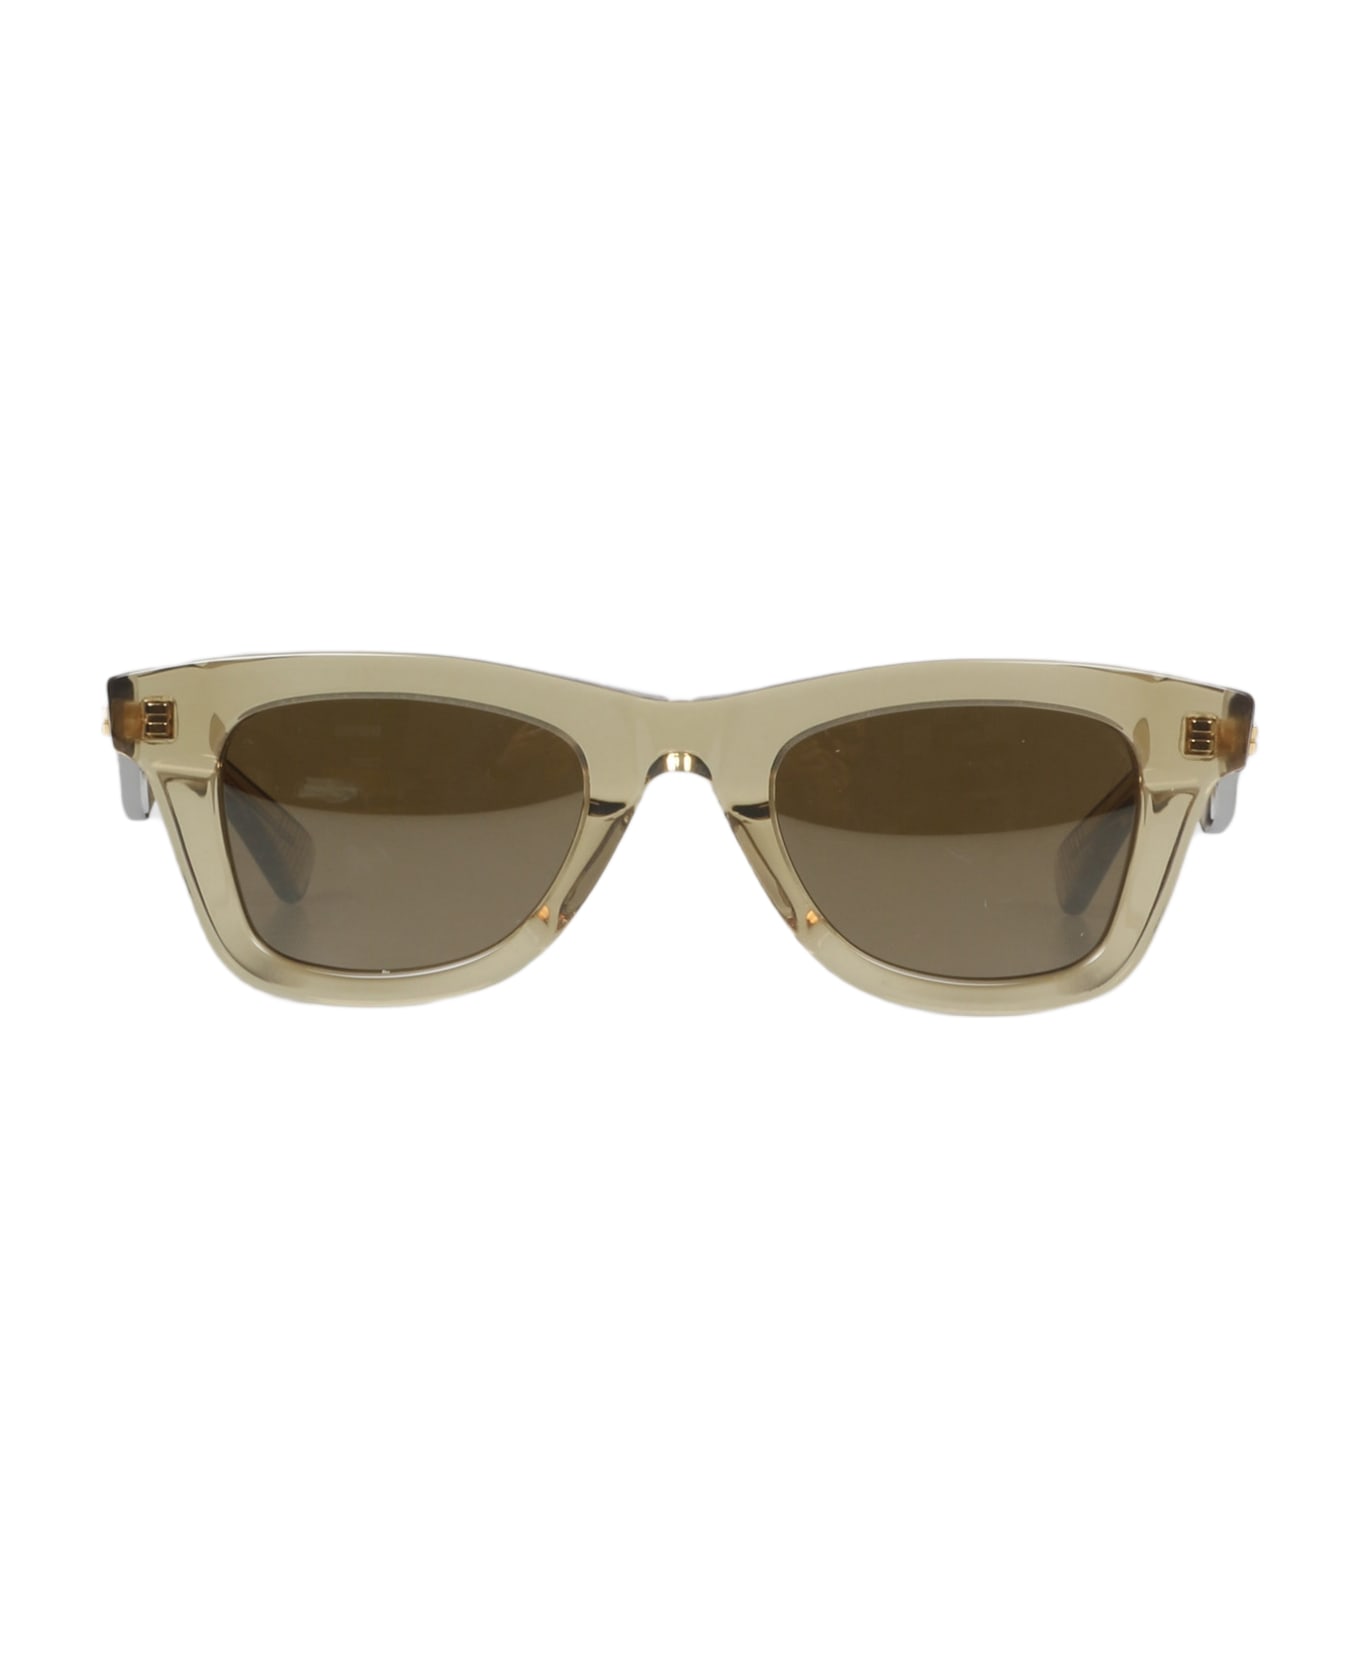 Bottega Veneta Eyewear Classic Sunglasses - Nude & Neutrals